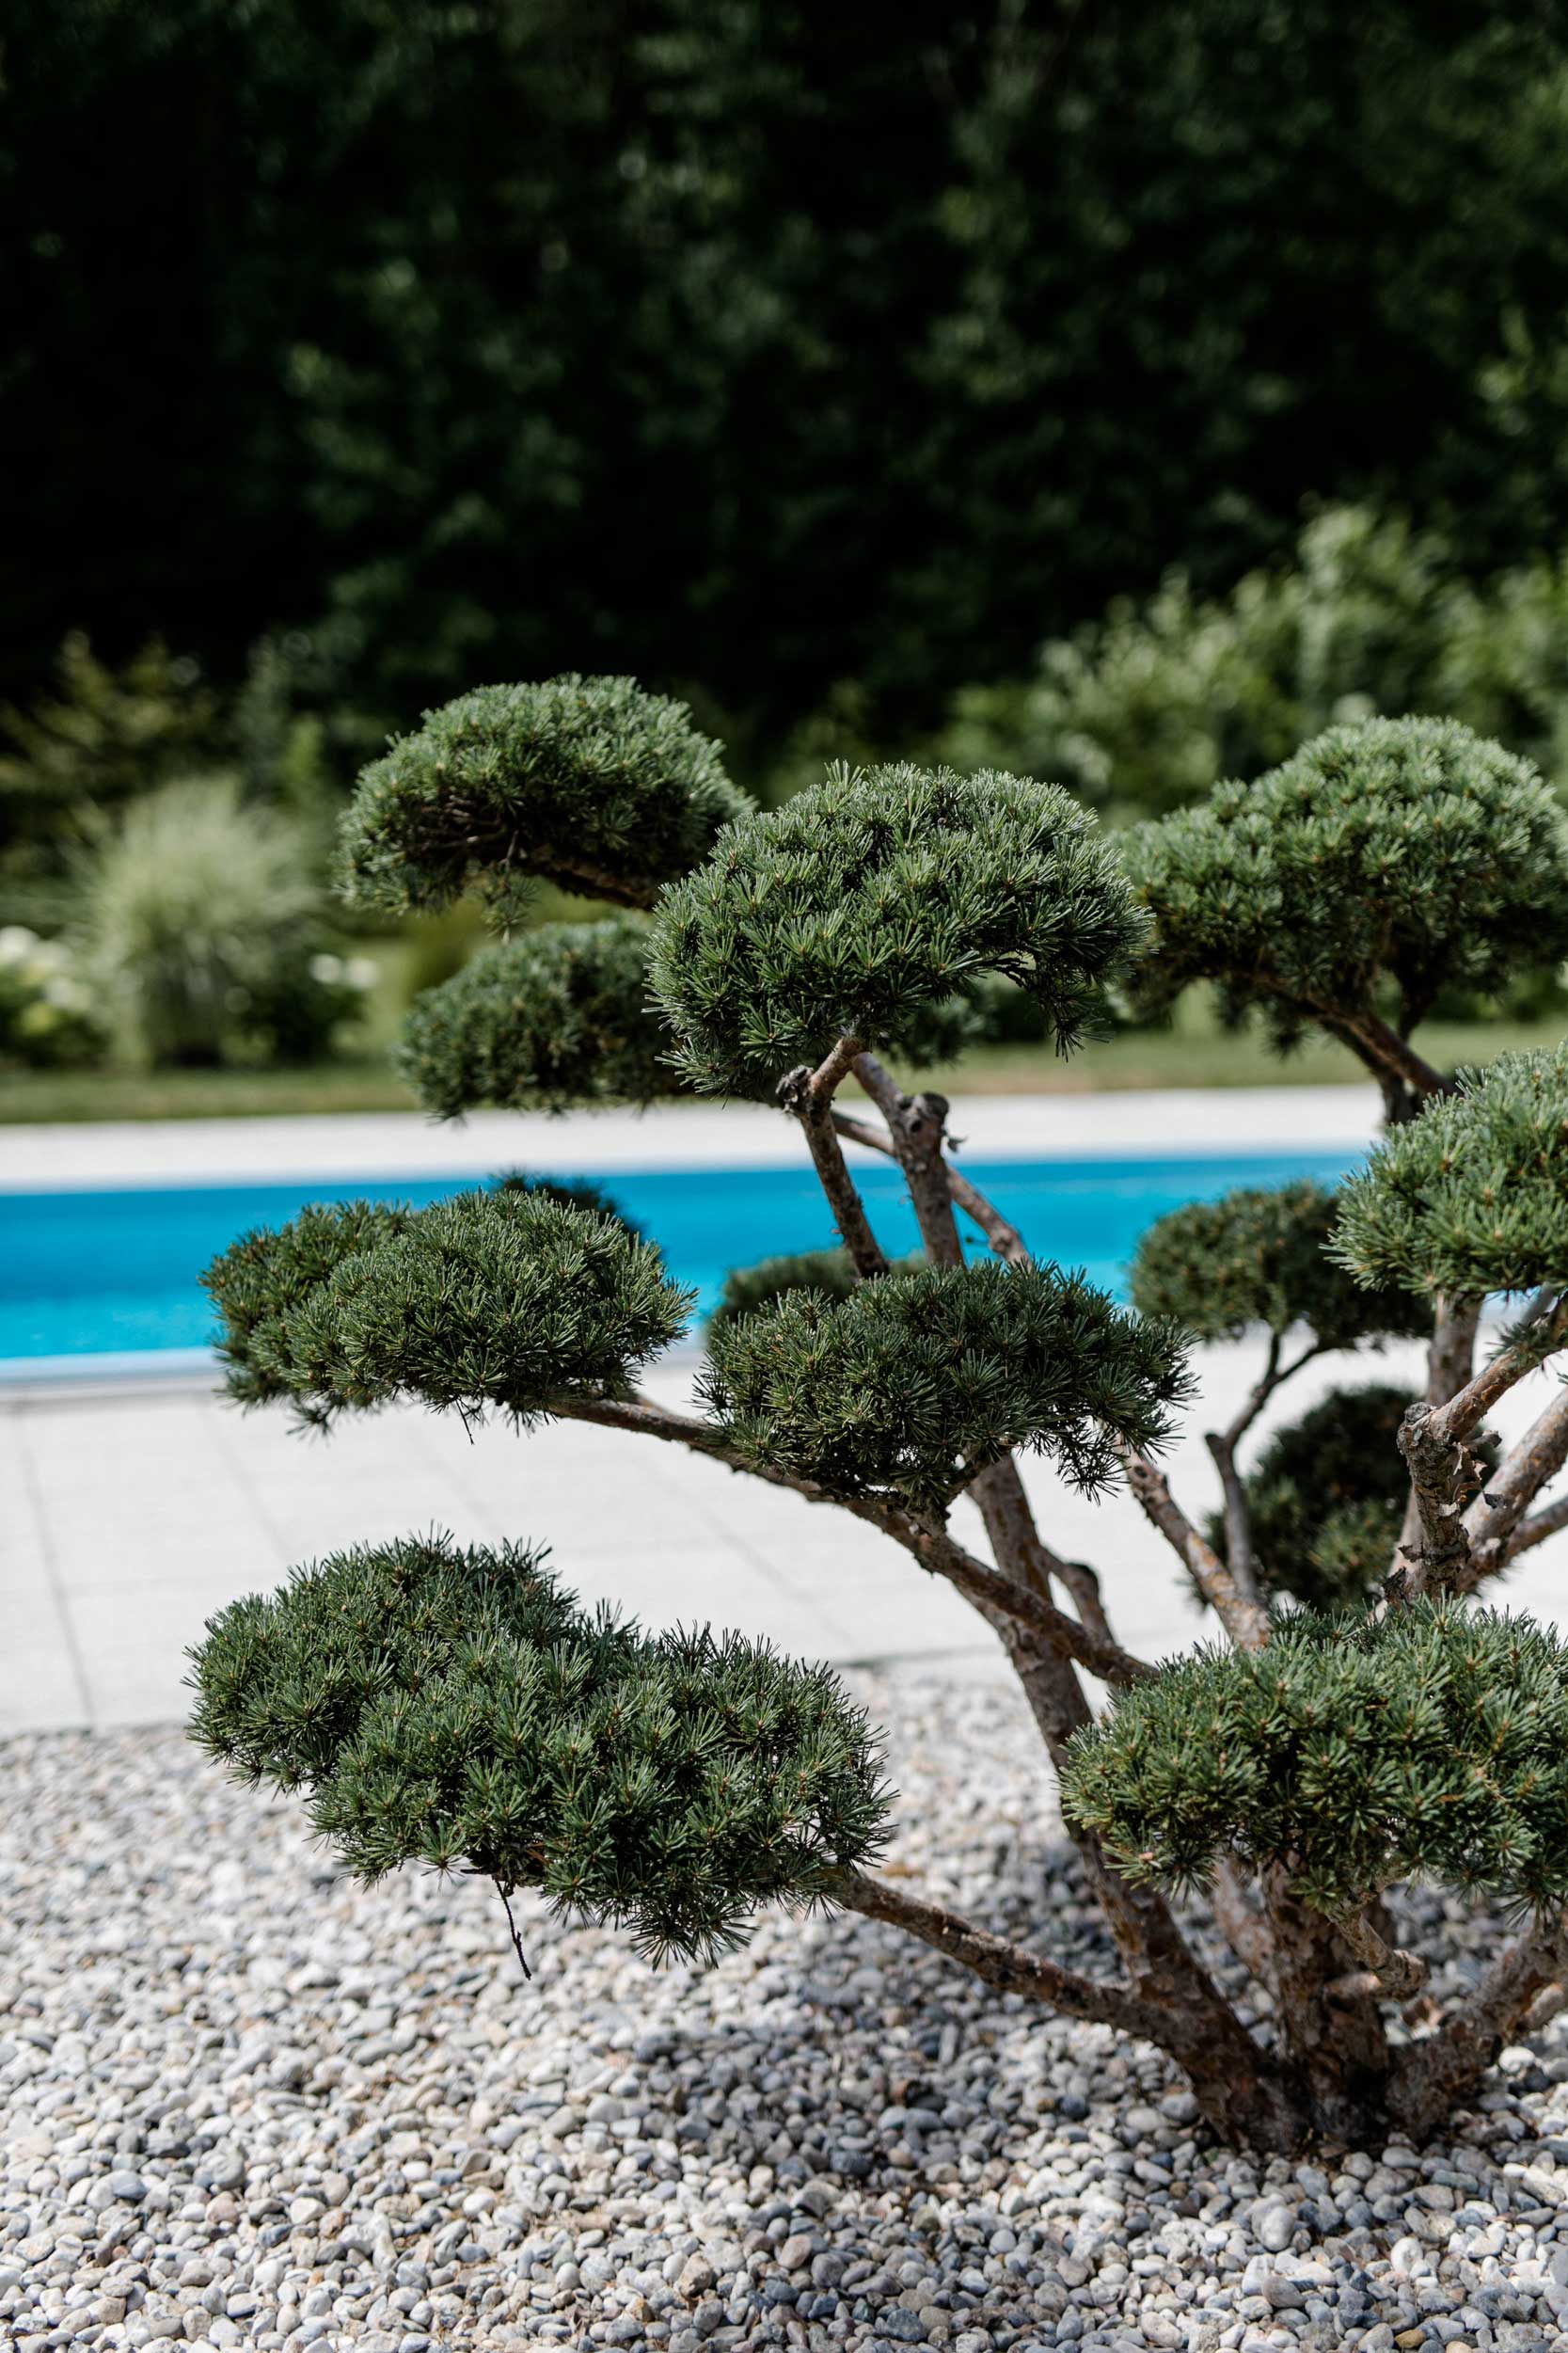 bonsai im beet aus kieselsteinen, dahinter ein swimming pool mit blauem wasser